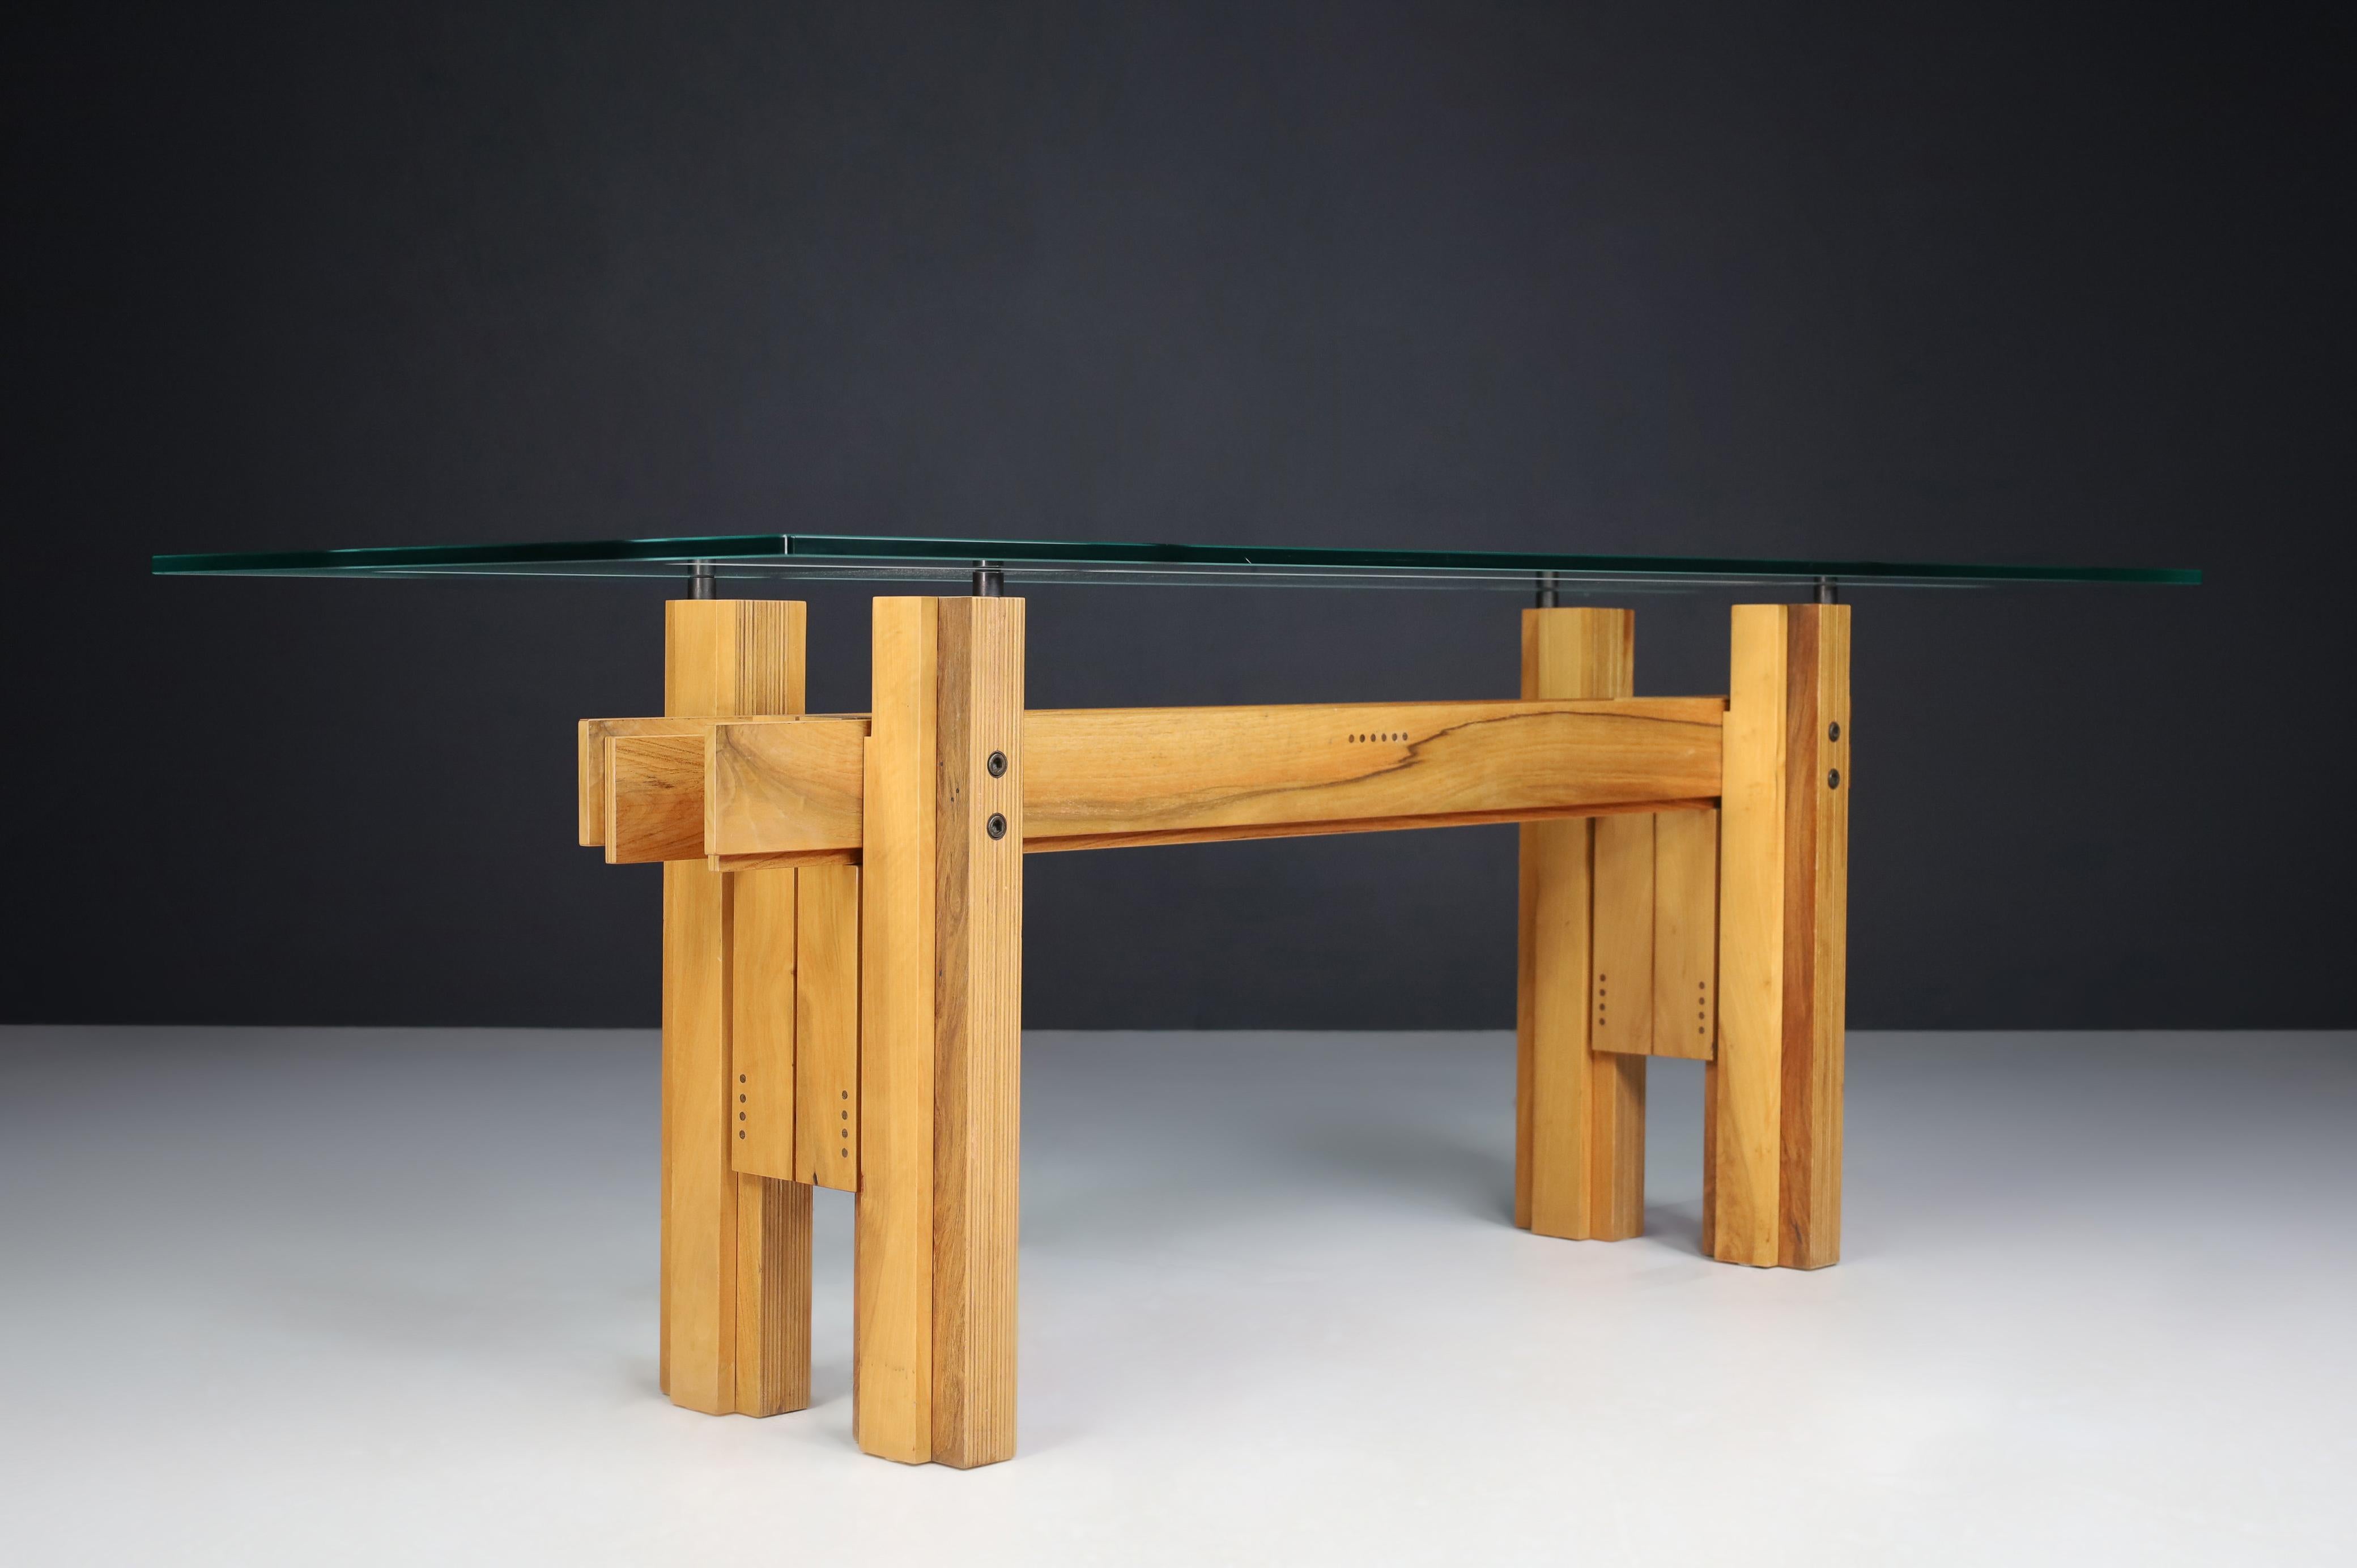 Franco Poli Tisch Cangrande aus Nussbaumholz für Bernini, Italien 1970er Jahre

Ein hervorragender Tisch aus massivem Nussbaumholz mit einer schönen, abgeschrägten Kristallplatte mit sandgestrahlten, mattierten Bändern des italienischen Designers